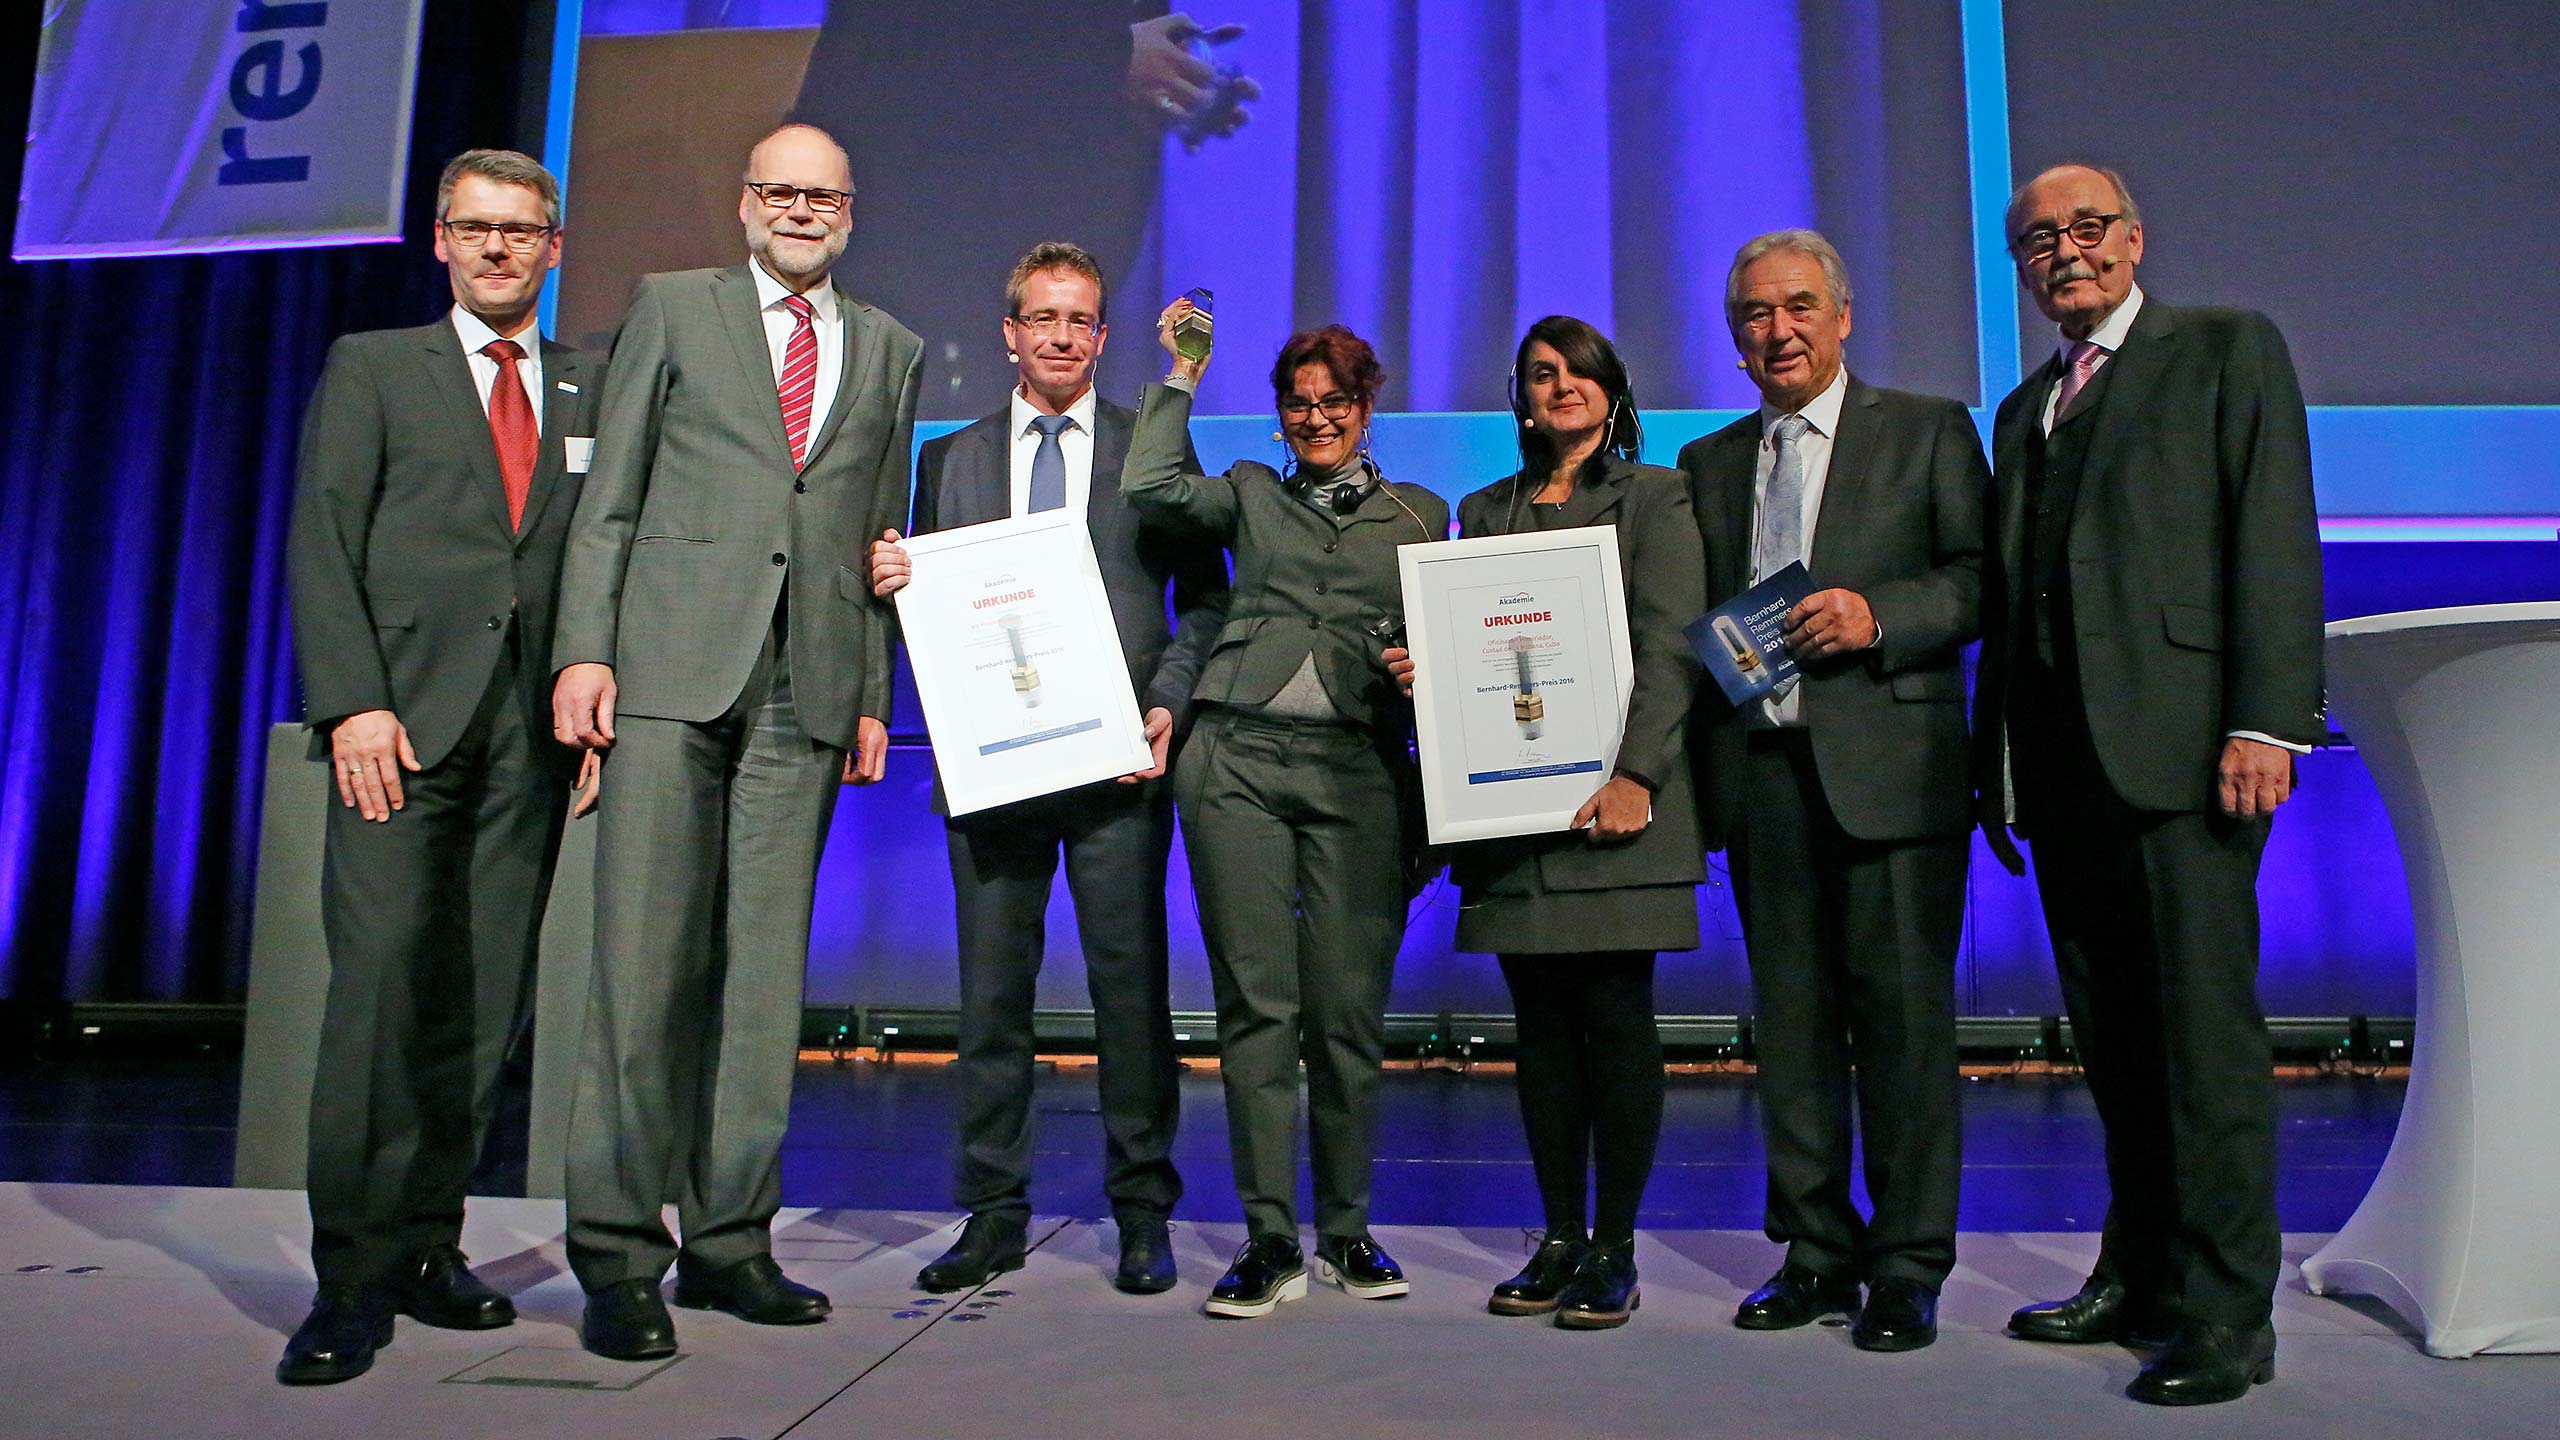 MD Projektmanagement wird mit dem Bernhard-Remmers-Preis 2016 ausgezeichnet.